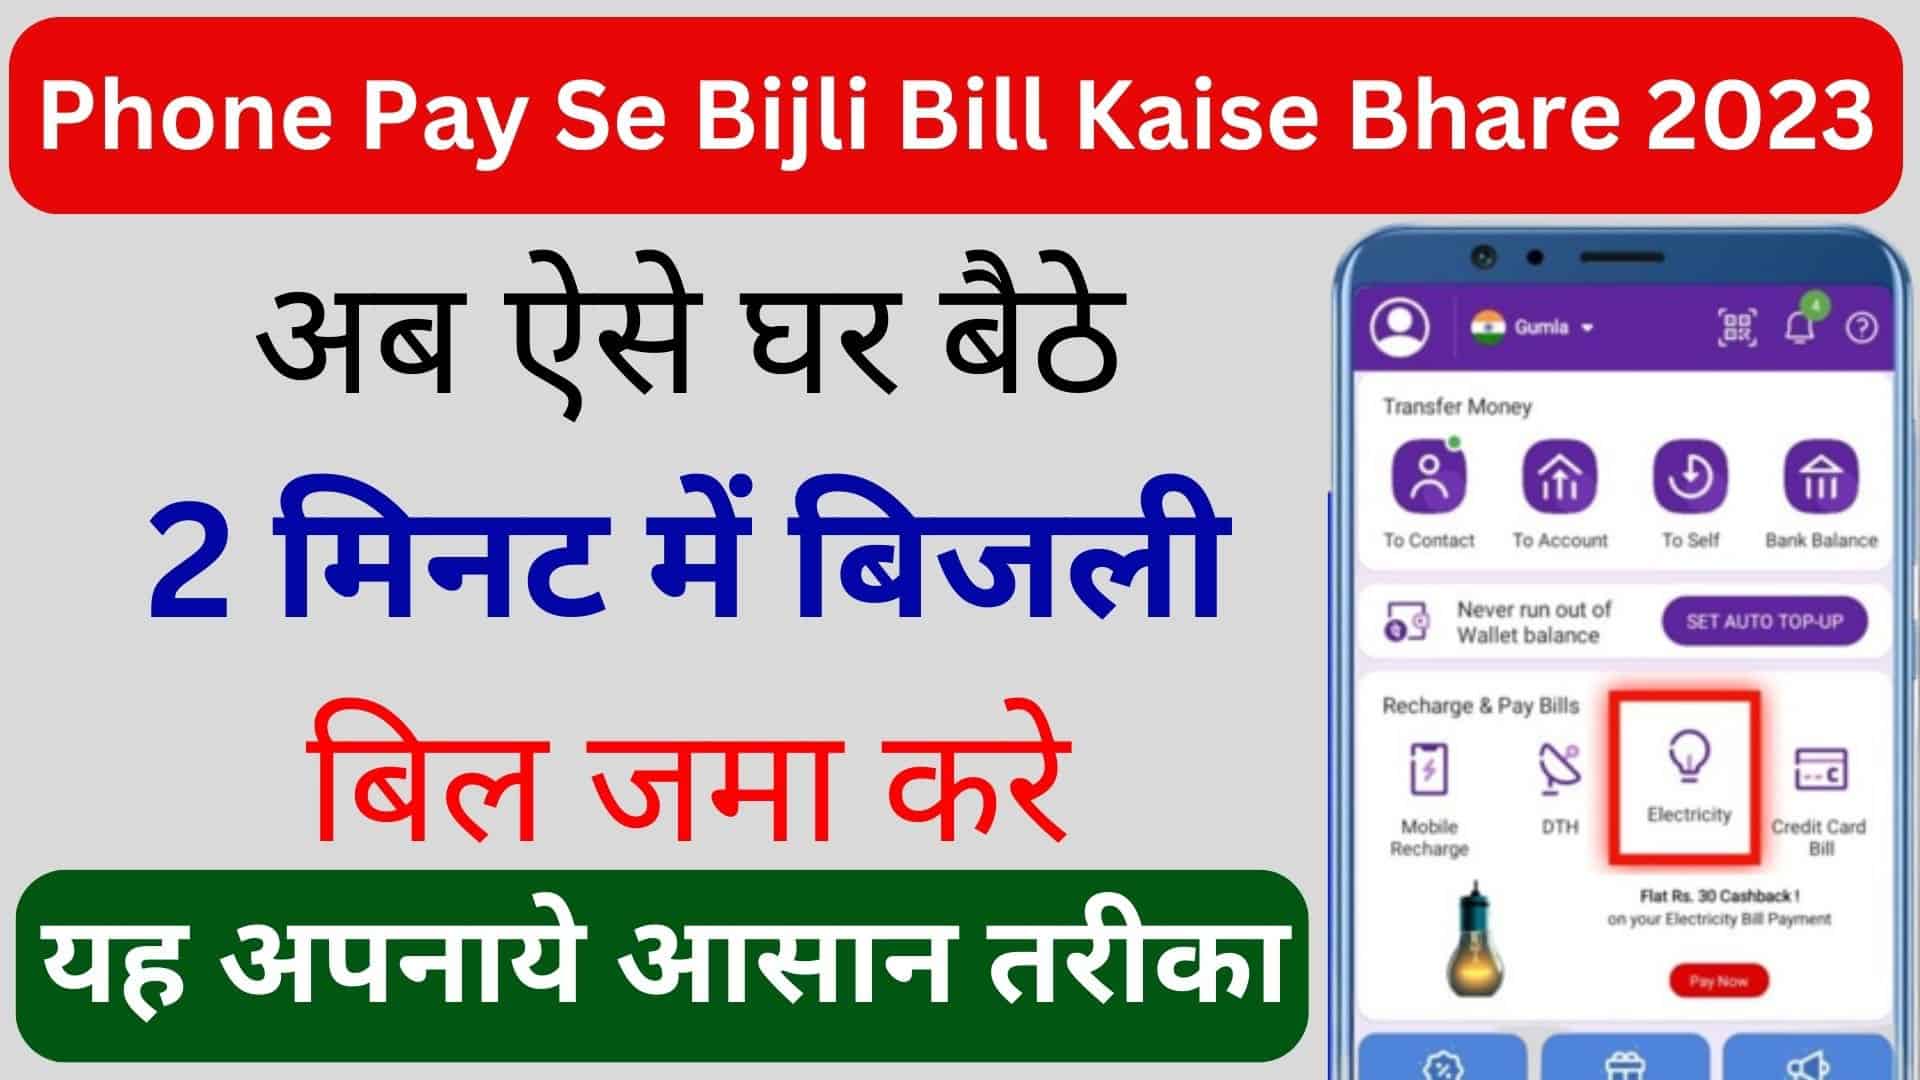 PhonePe Se Bijli Bill Kaise Bhare